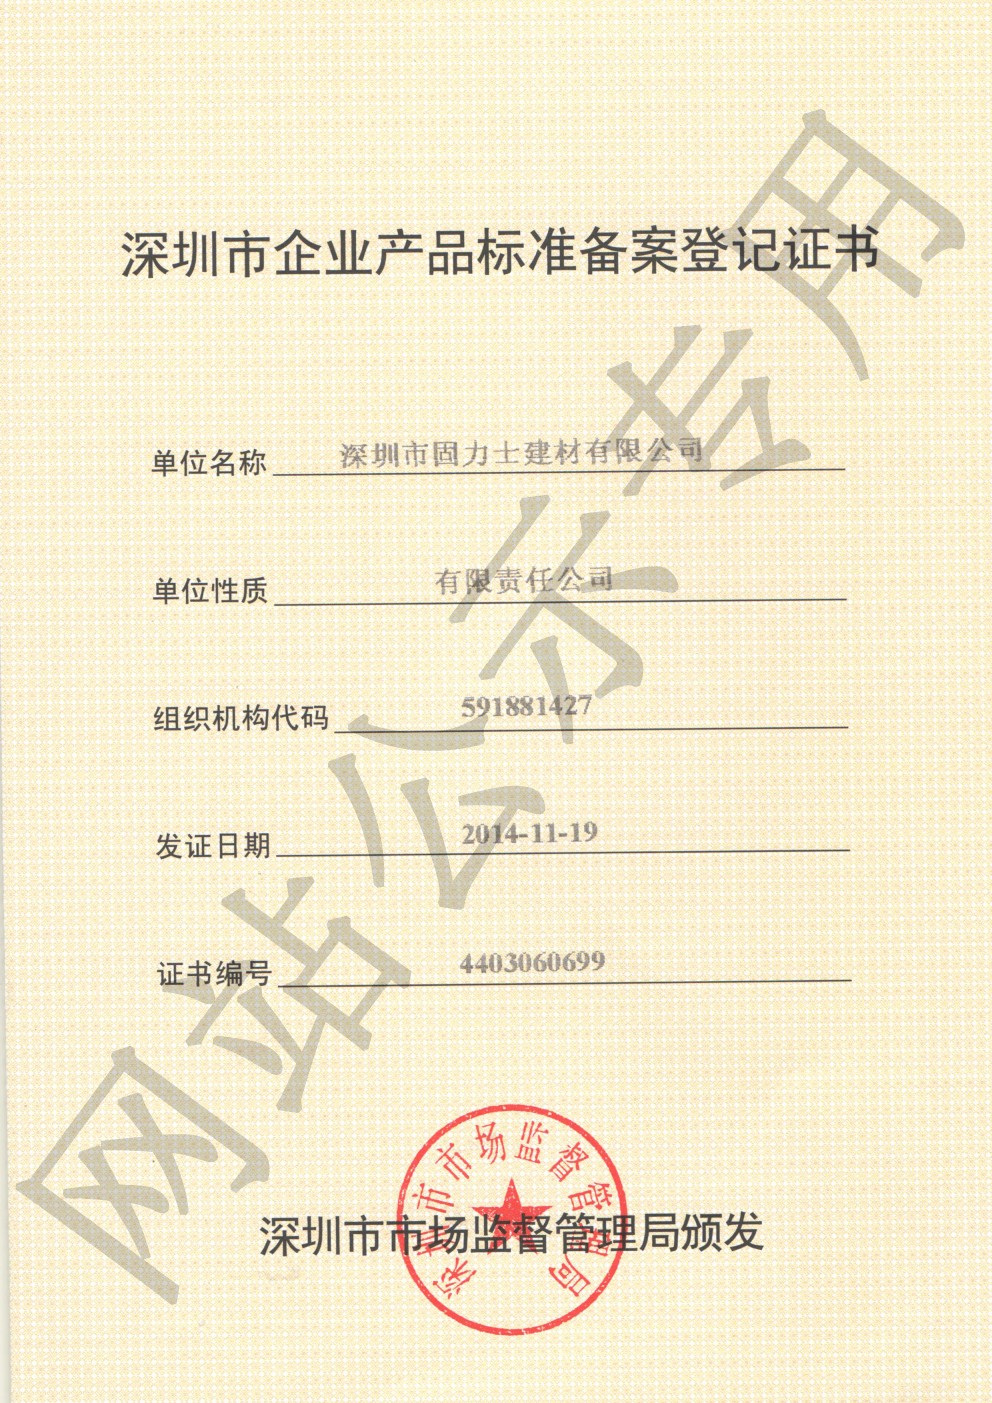 文山企业产品标准登记证书